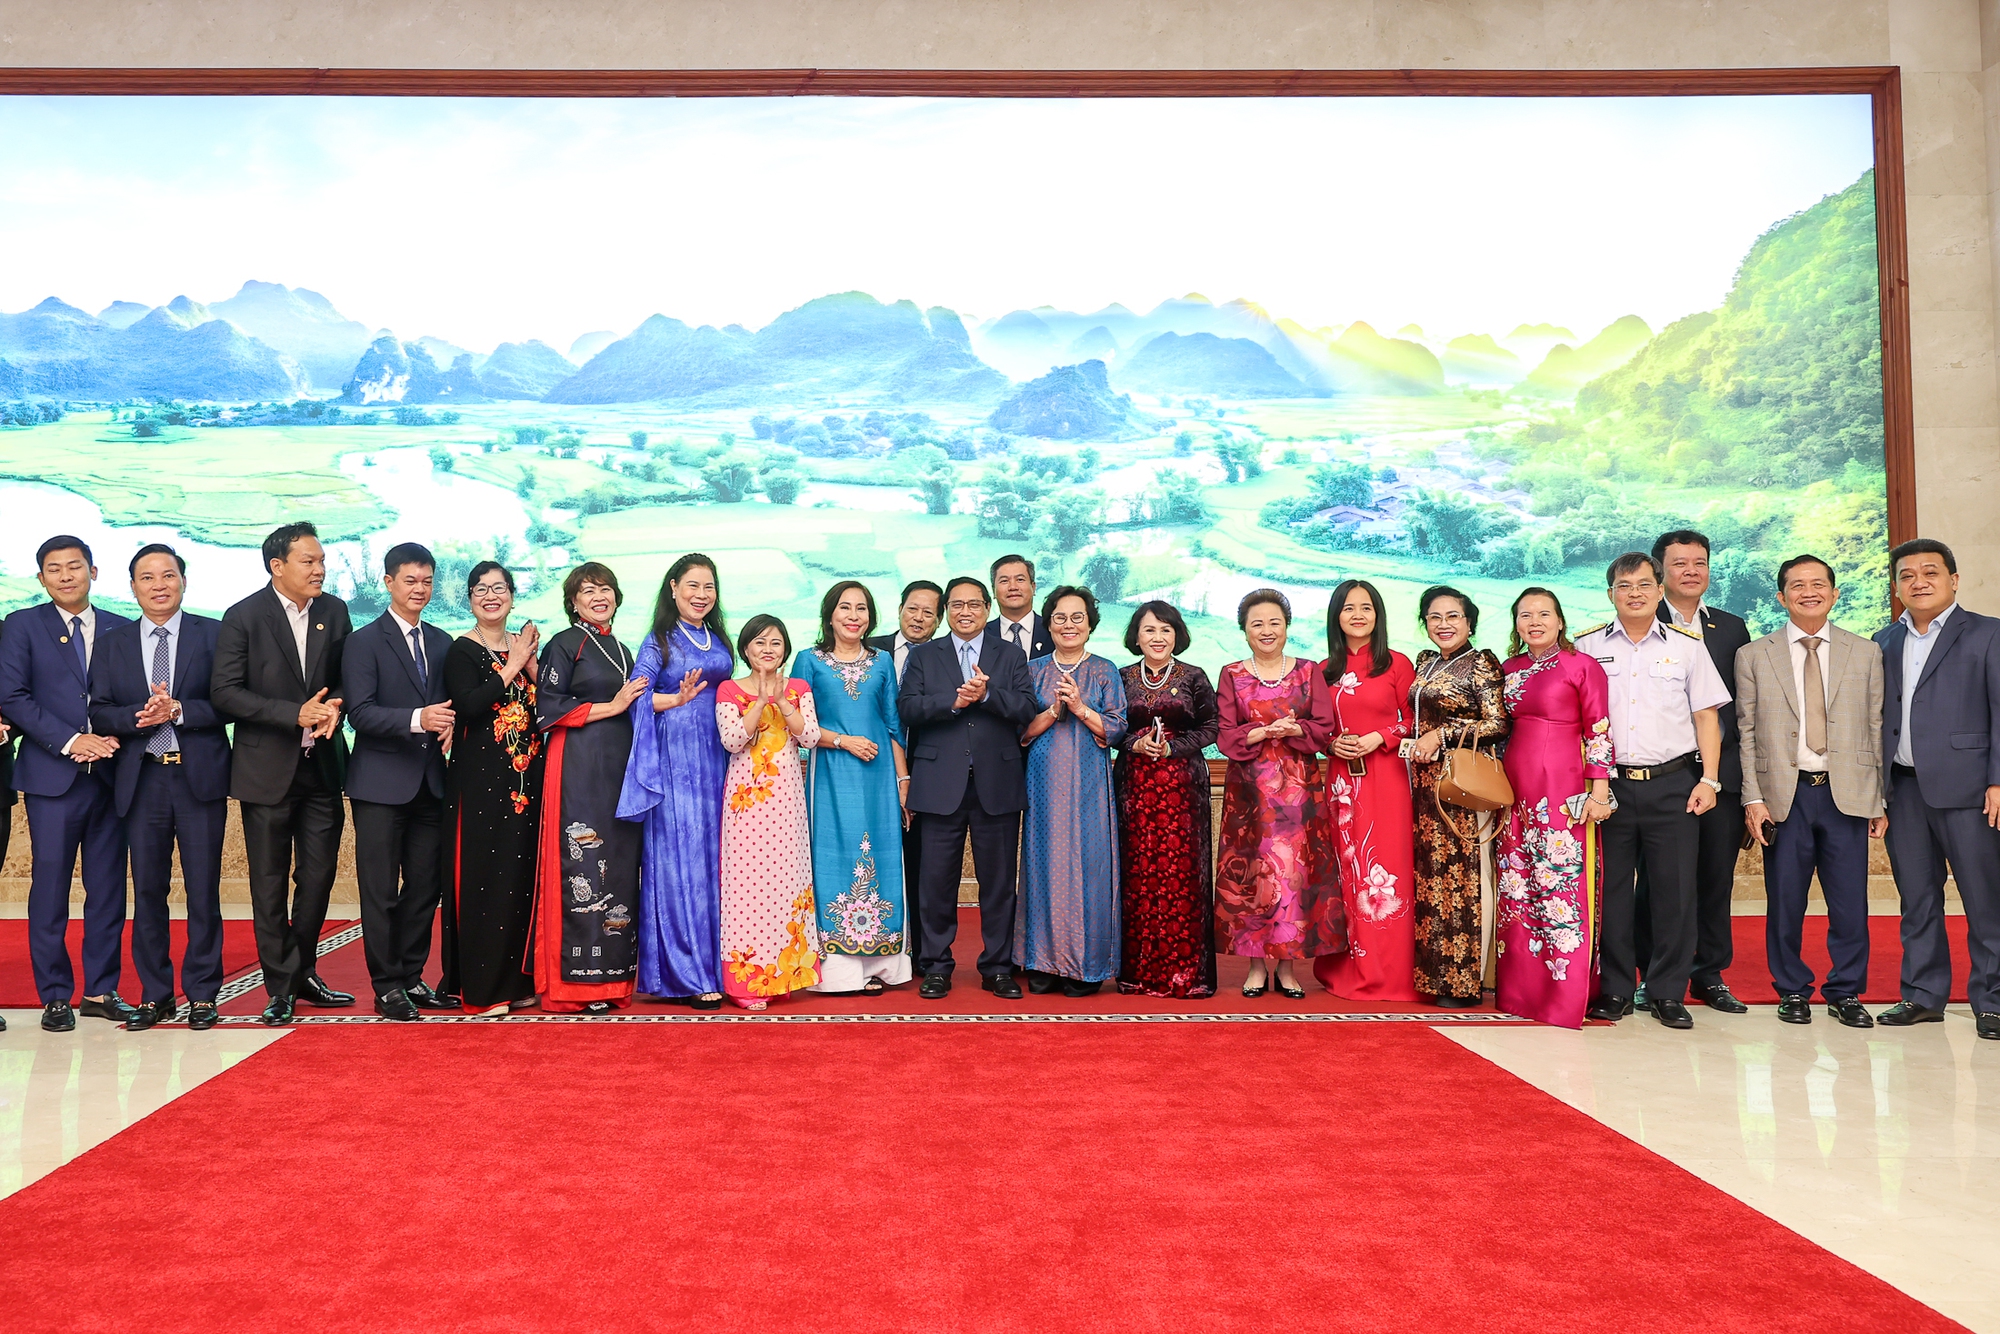 Thủ tướng Phạm Minh Chính và các đại biểu tham dự buổi gặp mặt, trong đó có các doanh nhân nữ tiêu biểu - Ảnh: VGP/Nhật Bắc